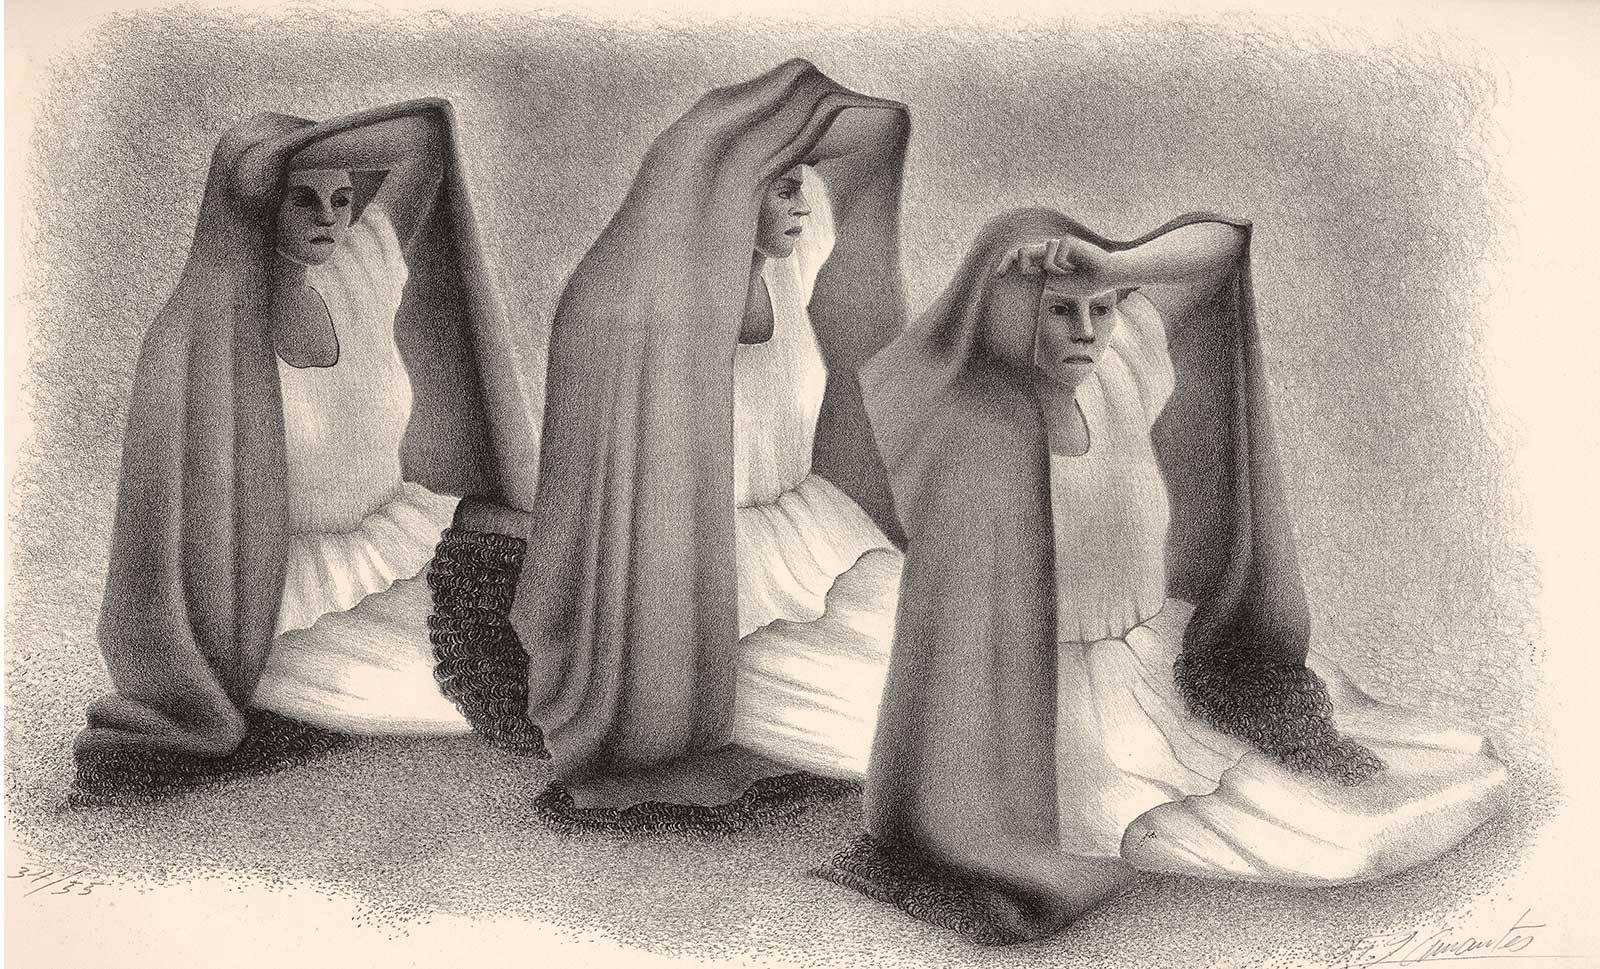 Francisco Dosamantes Figurative Print - Mujeres Veracruzans (three seated women from Vera Cruz Mexico in shawls)